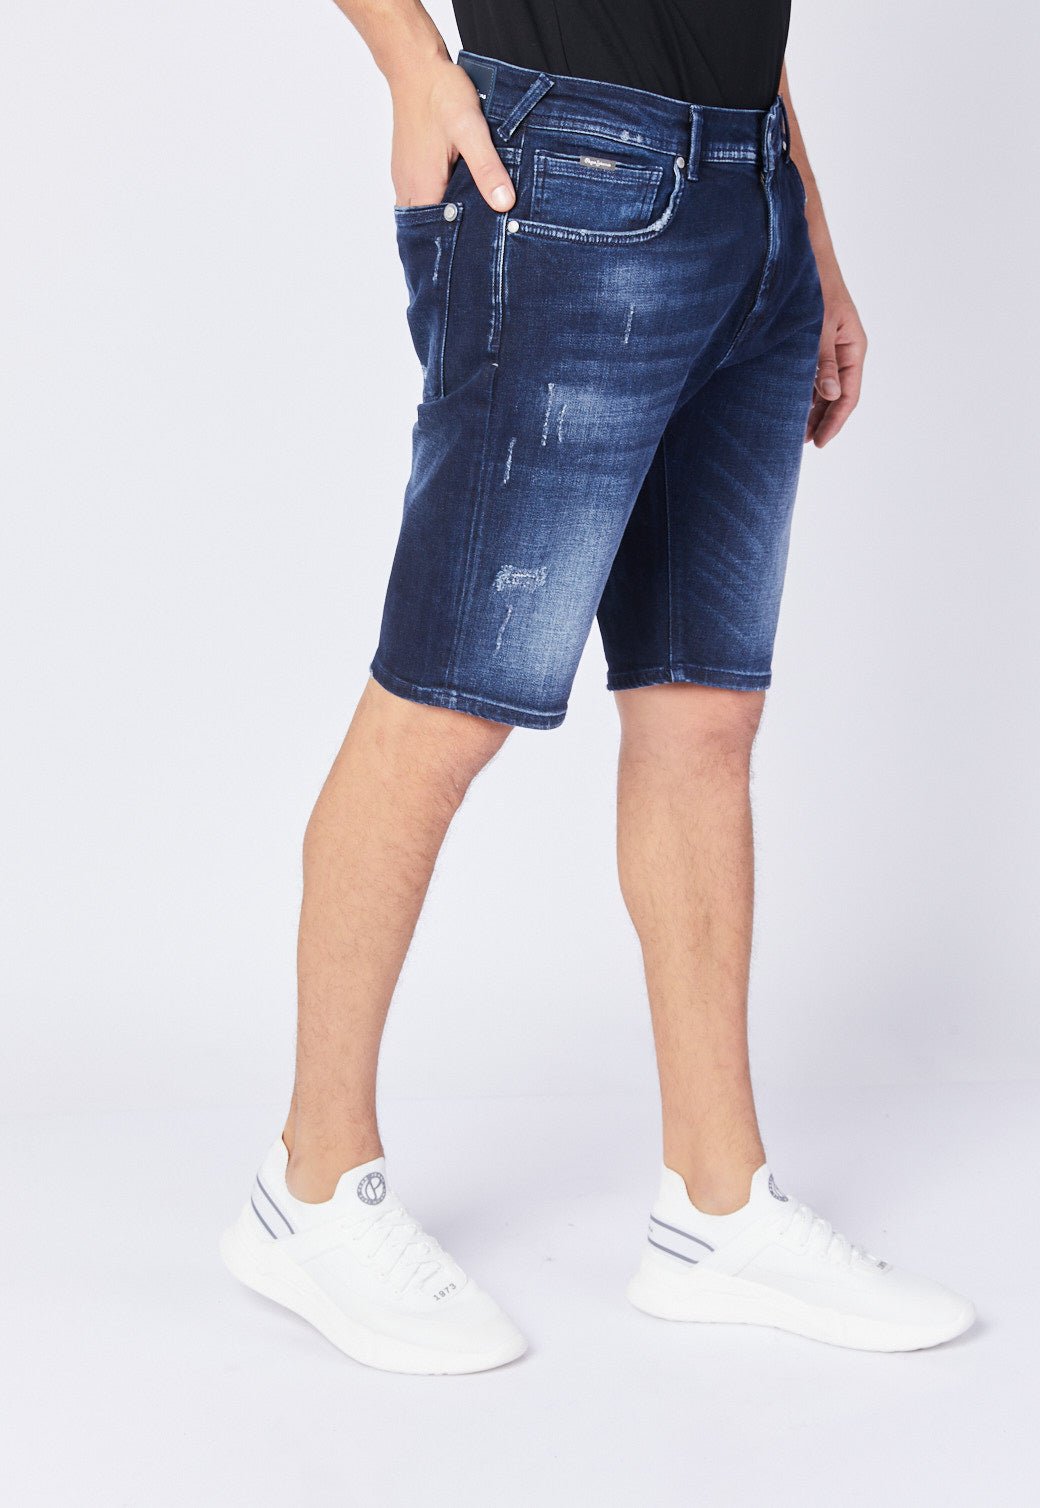 ג'ינס ברמודה משופשף לגברים - Pepe Jeans